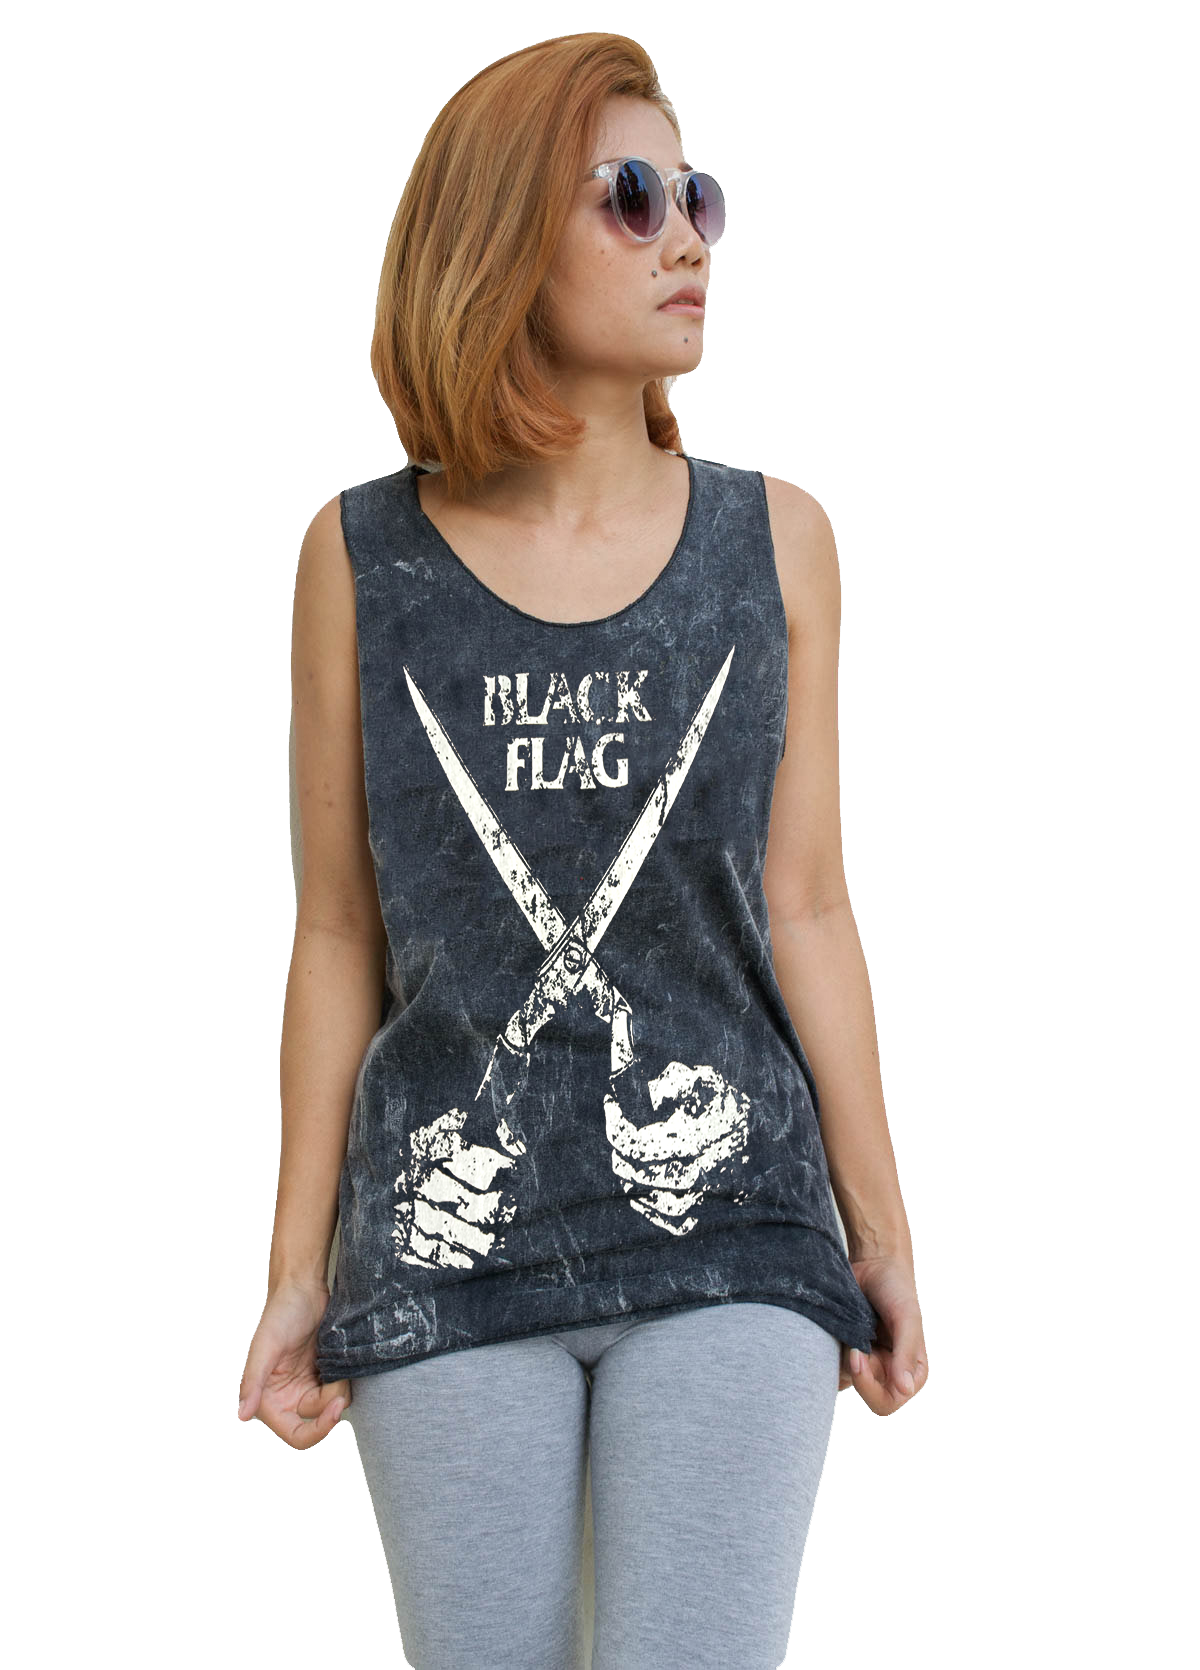 Unisex Black Flag Tank-Top Singlet vest Sleeveless T-shirt